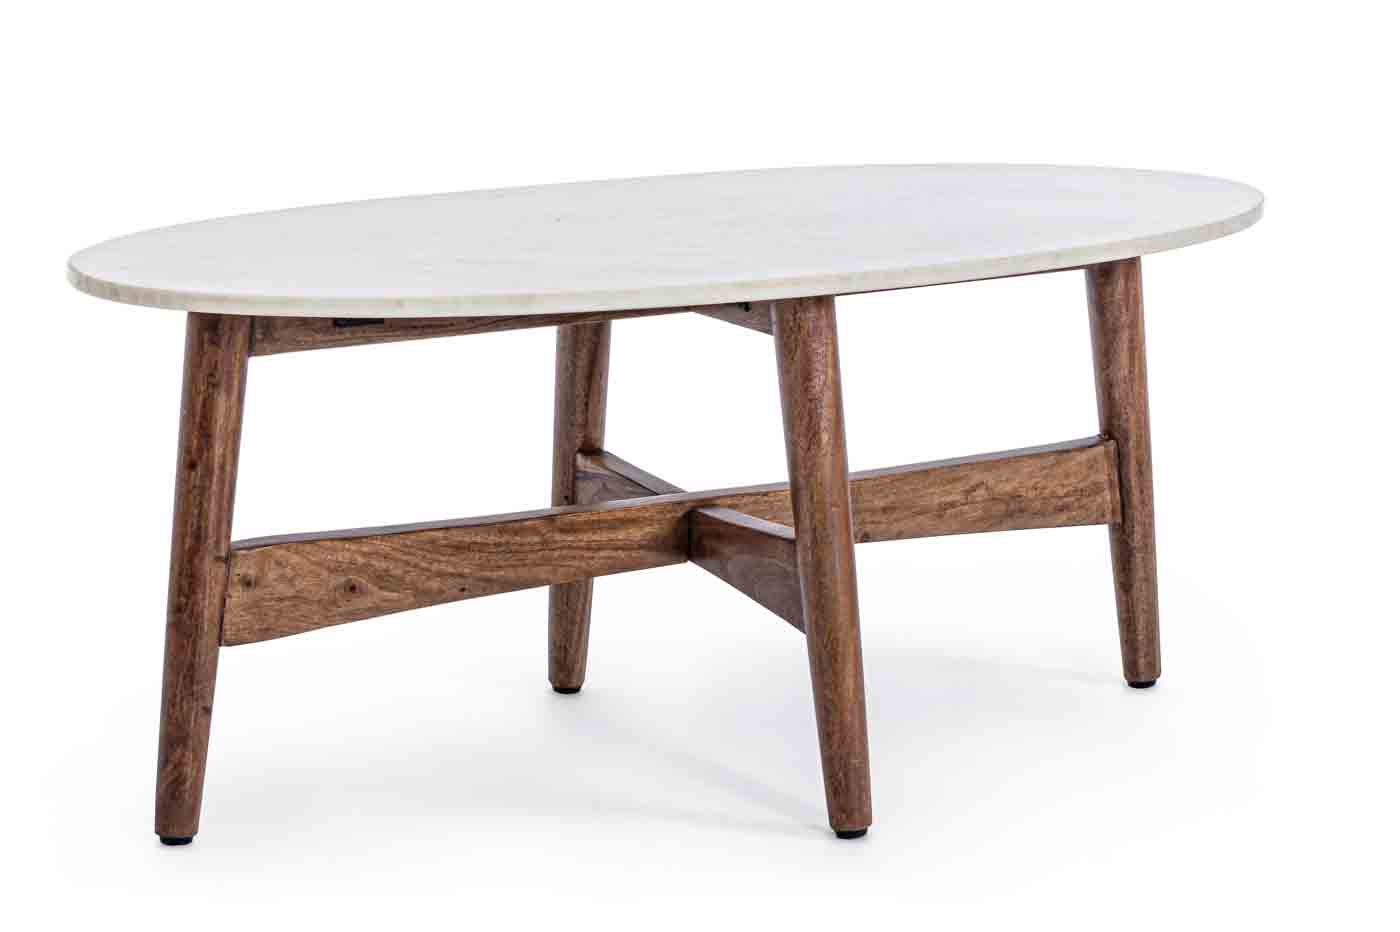 Der Beistelltisch Albany wurde aus einem Gestell aus Akazienholz gefertigt. Die Tischplatte ist aus weißen Marmor.